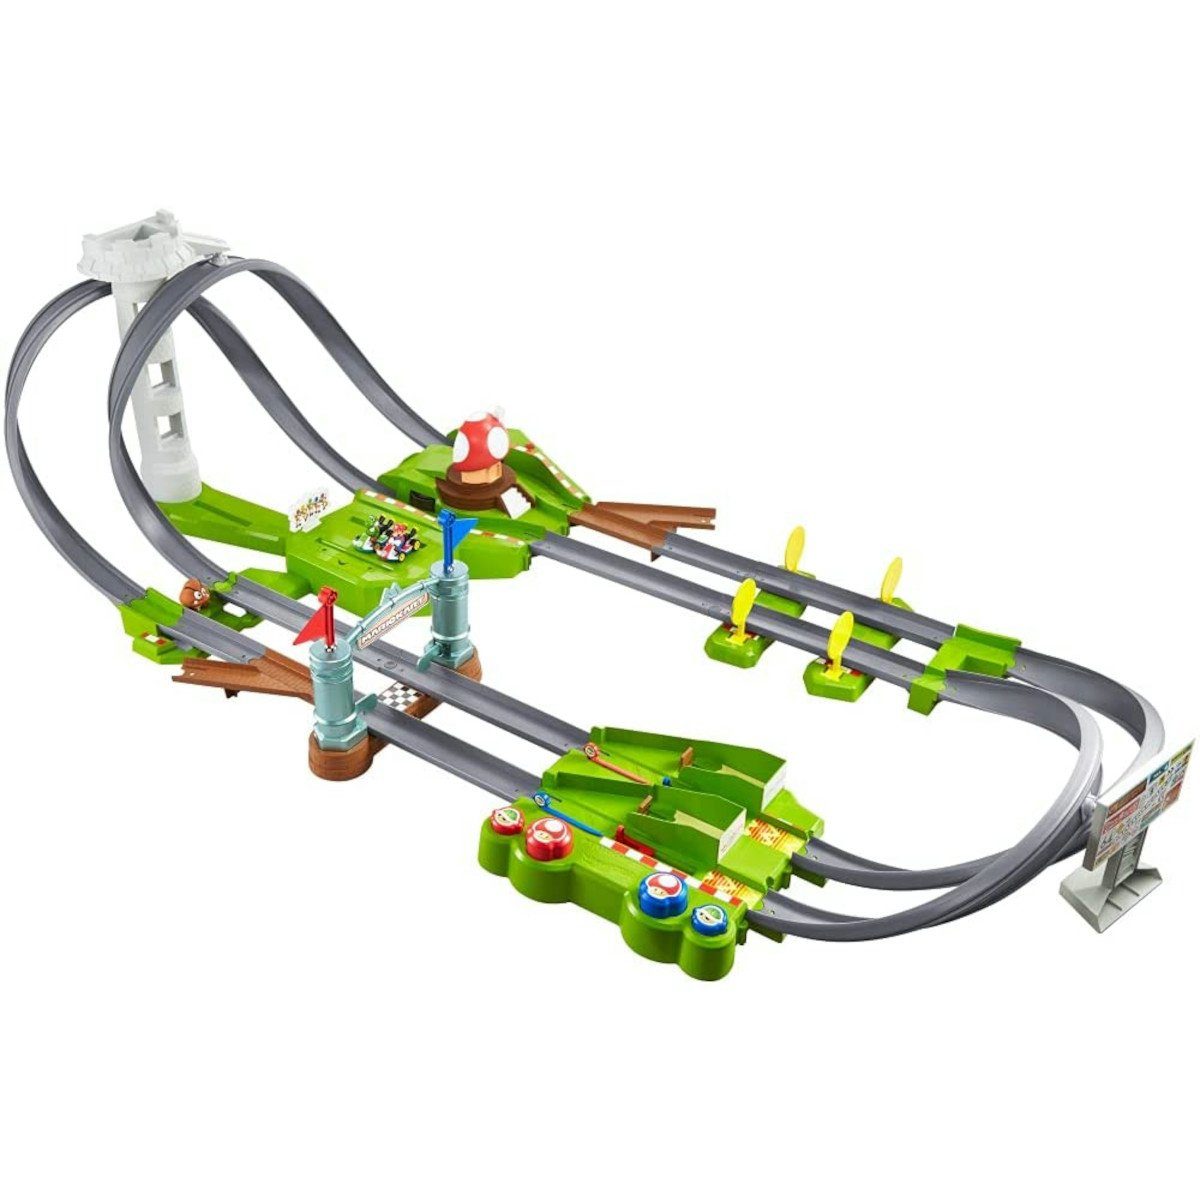 Mattel® Autorennbahn Hot Wheels - Mario Kart Rennbahn inkl. 2 Spielzeugautos